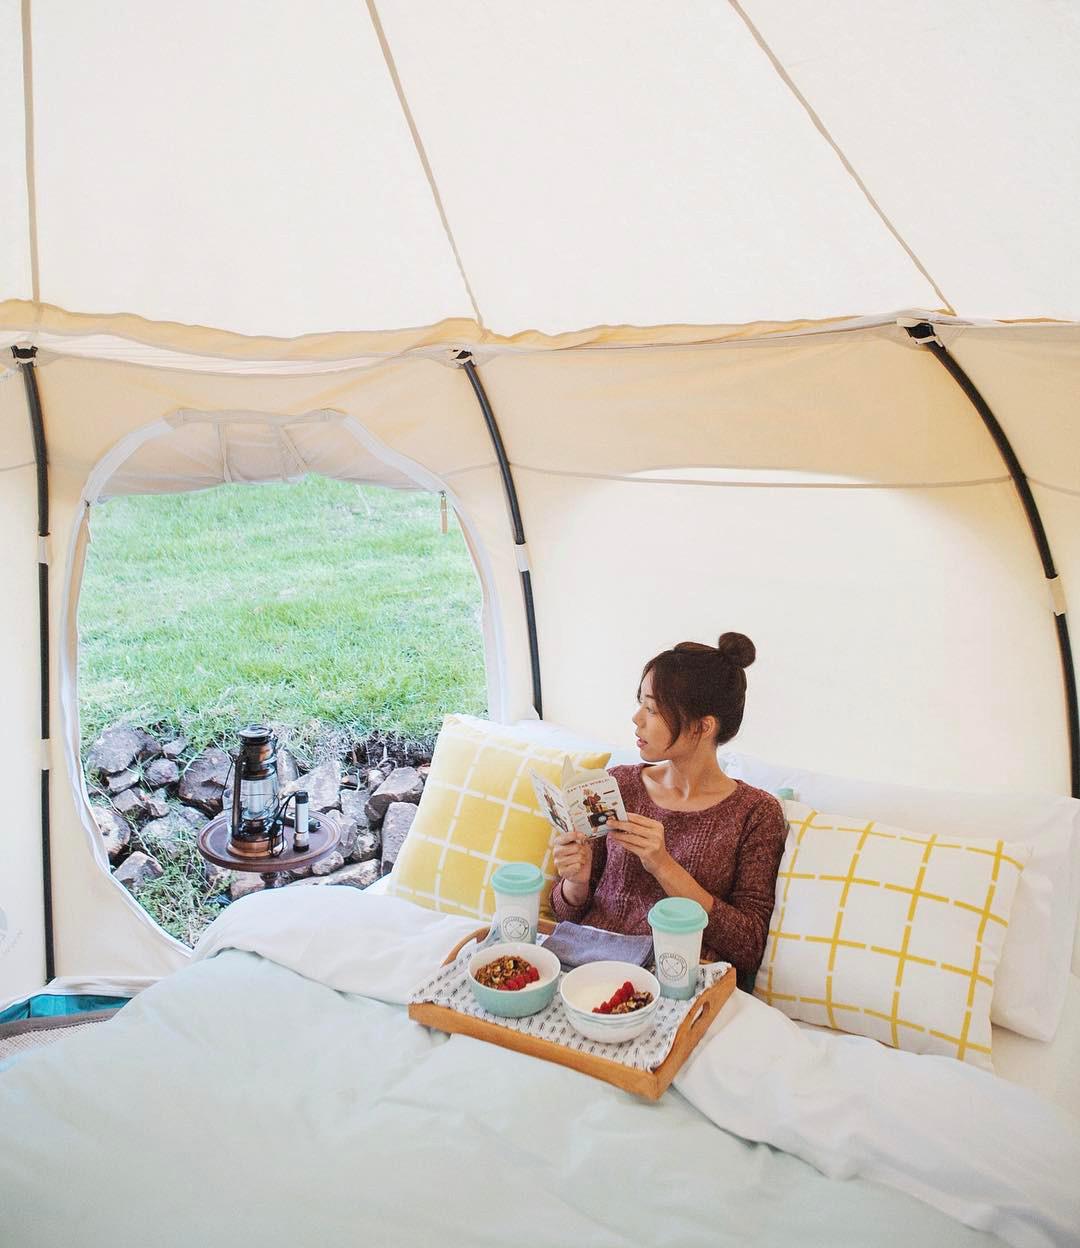 浪漫的野外露营 帐篷酒店墨西哥里维埃拉玛雅宁静营